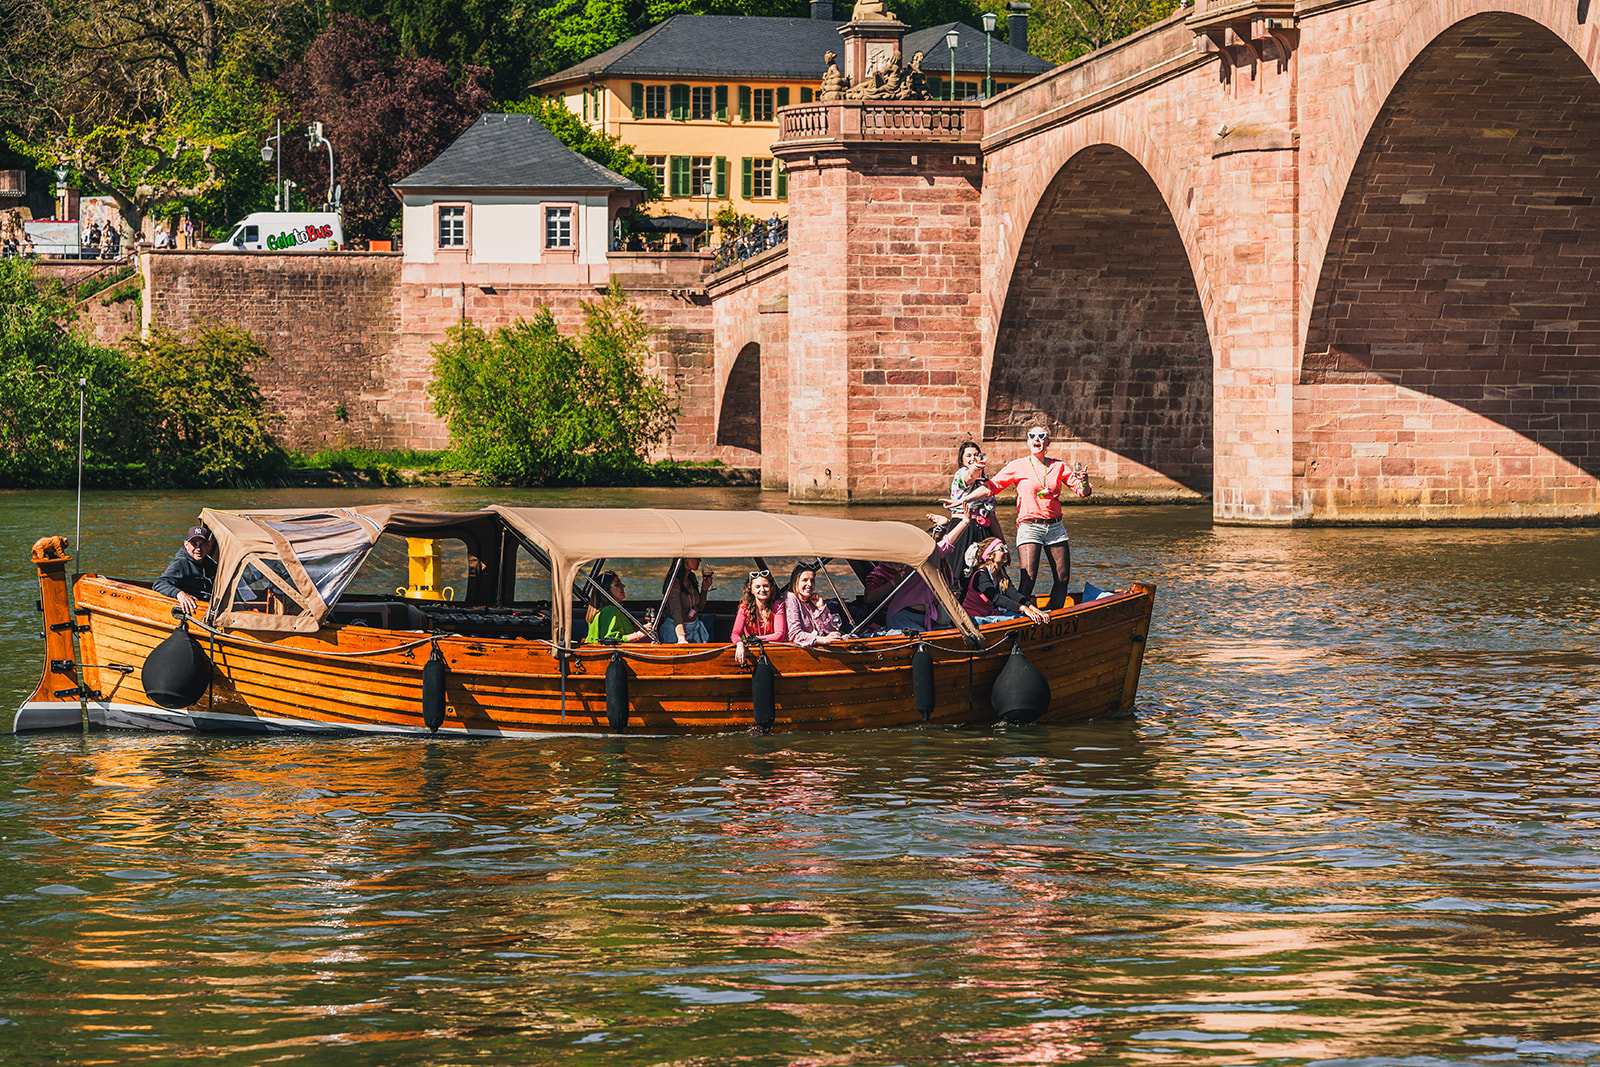 Am 6. Juli bekommen die Boote von Riverboat anlässlich des Drachenbootrennen Heidelberg Gesellschaft auf dem Neckar.